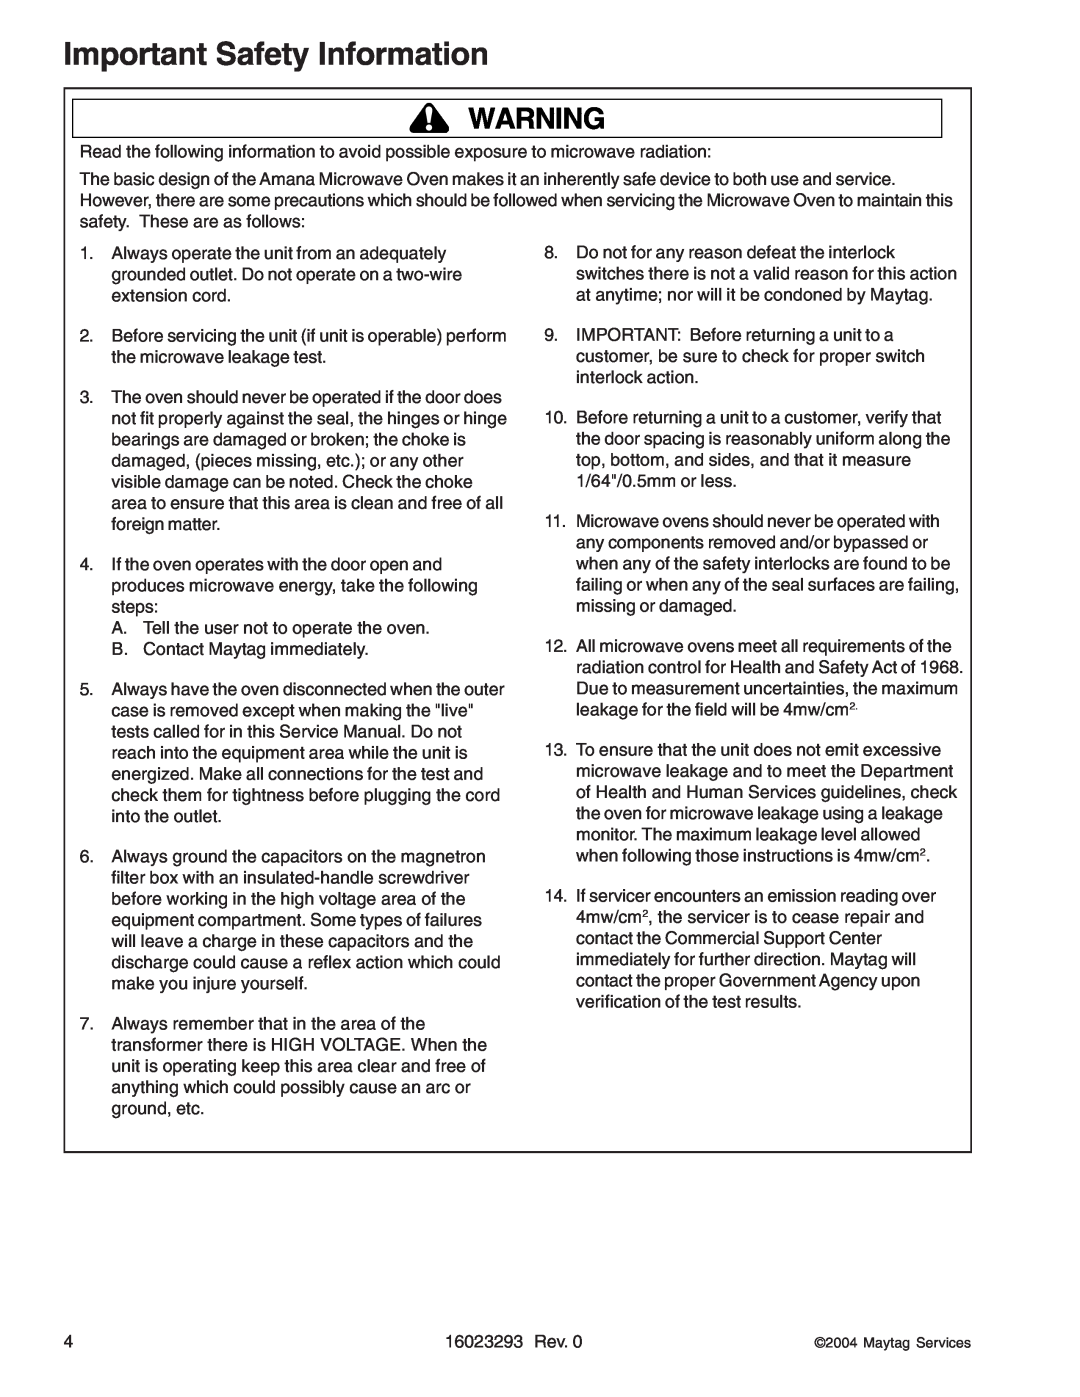 Maytag RCS10DA, RFS manual Important Safety Information 